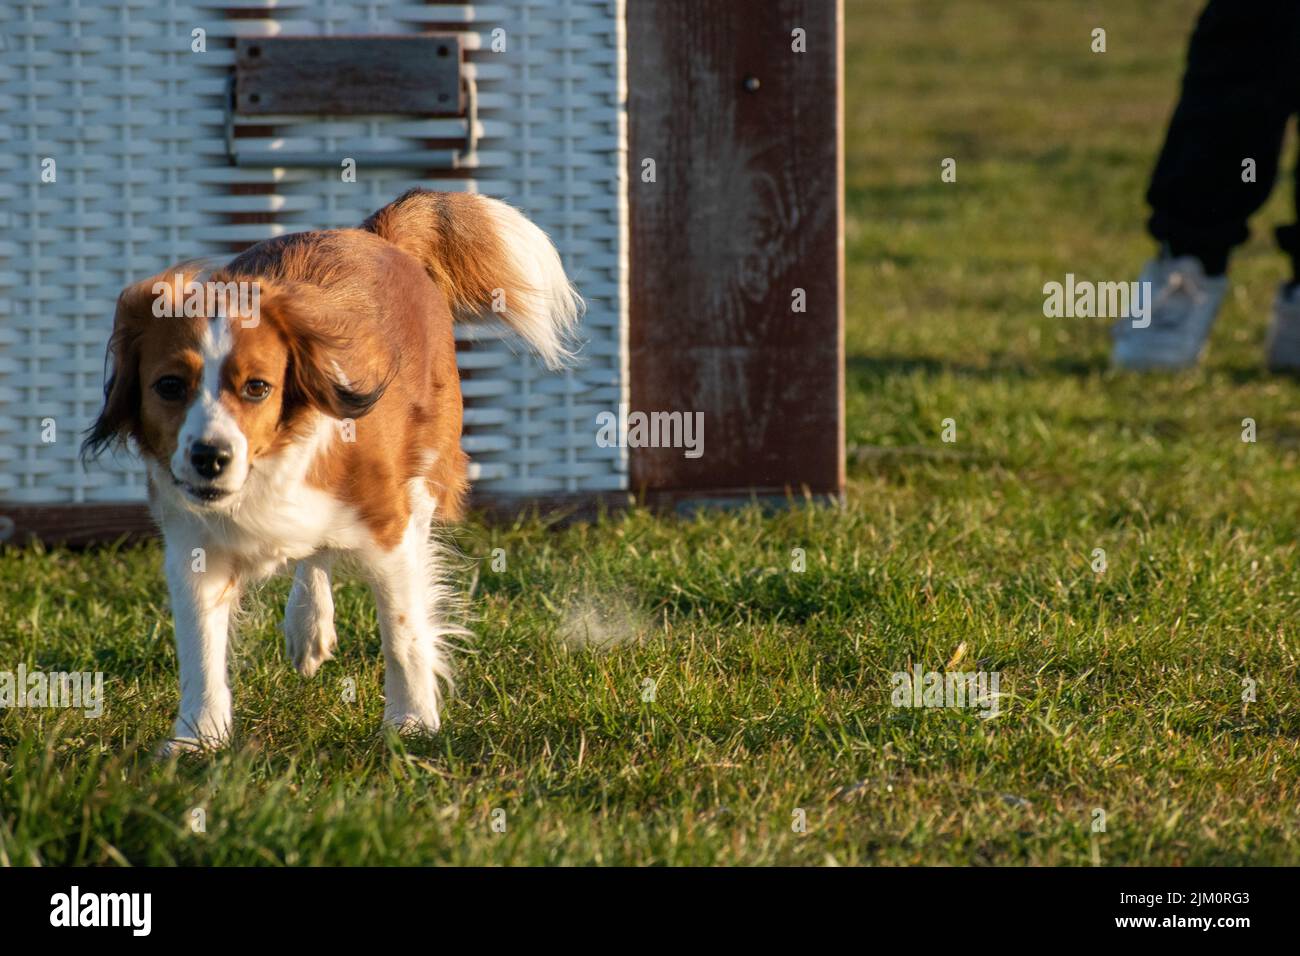 A closeup of a cute fluffy Dutch Kooikerhondje dog running around in a lush green field Stock Photo